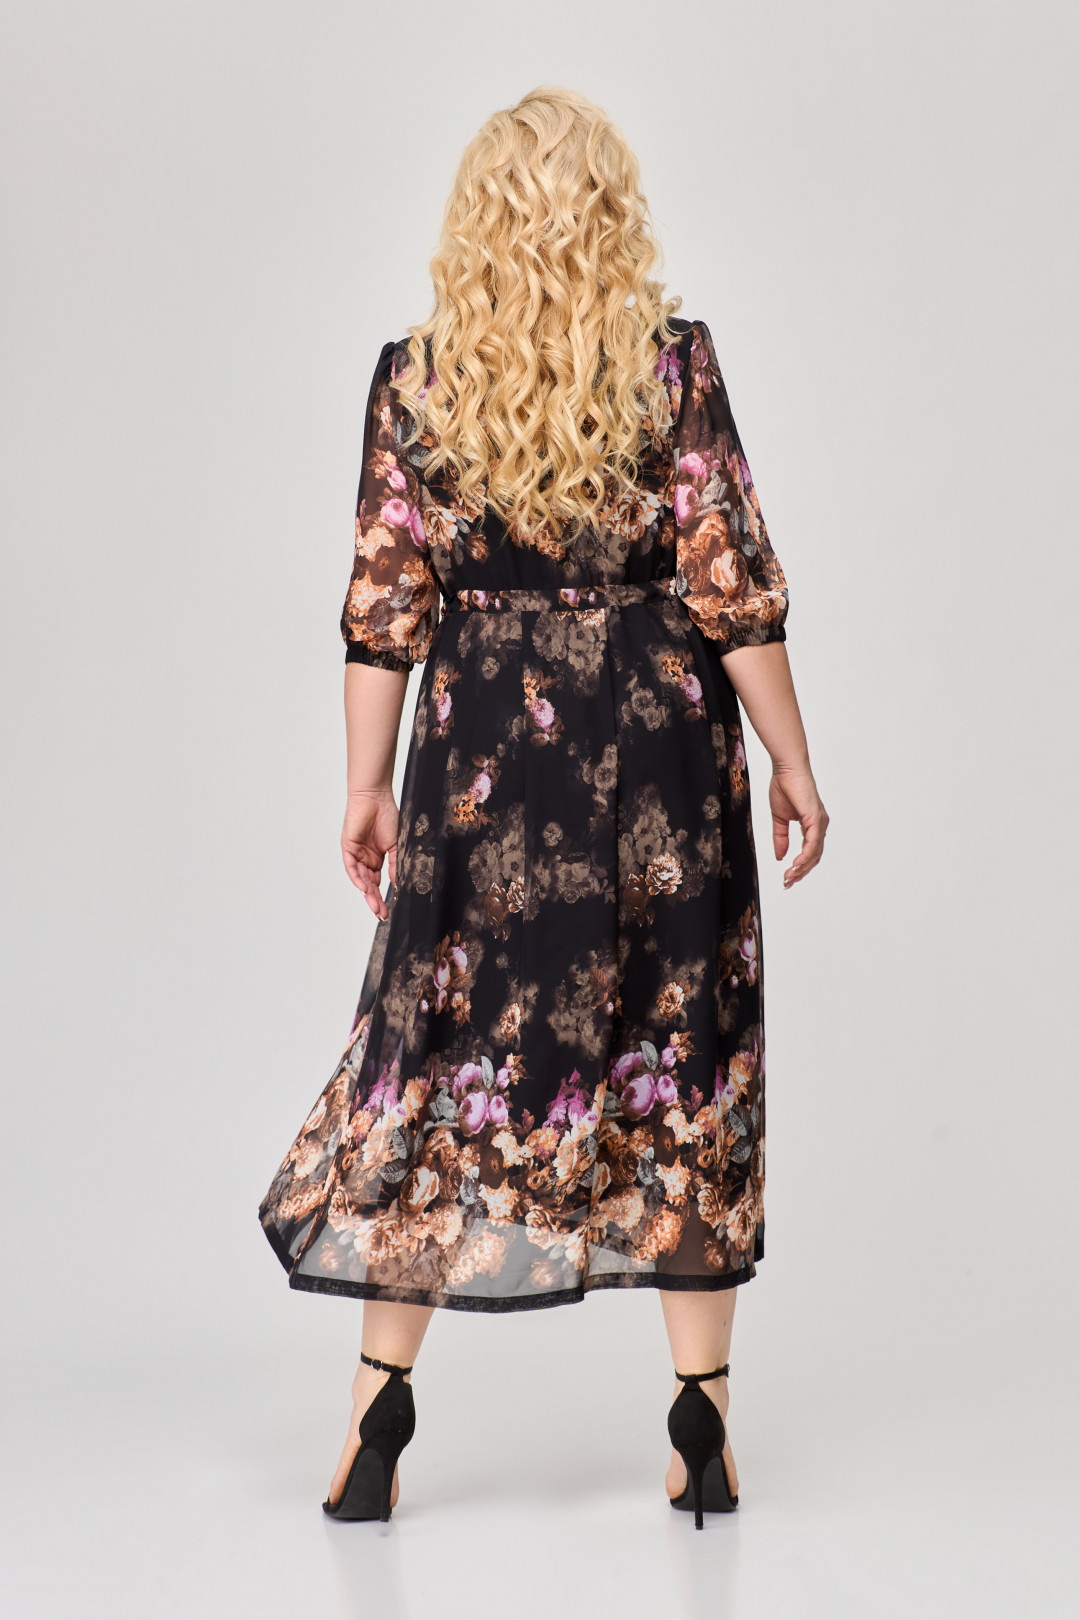 Платье Светлана-Стиль 1778 черный+цветы